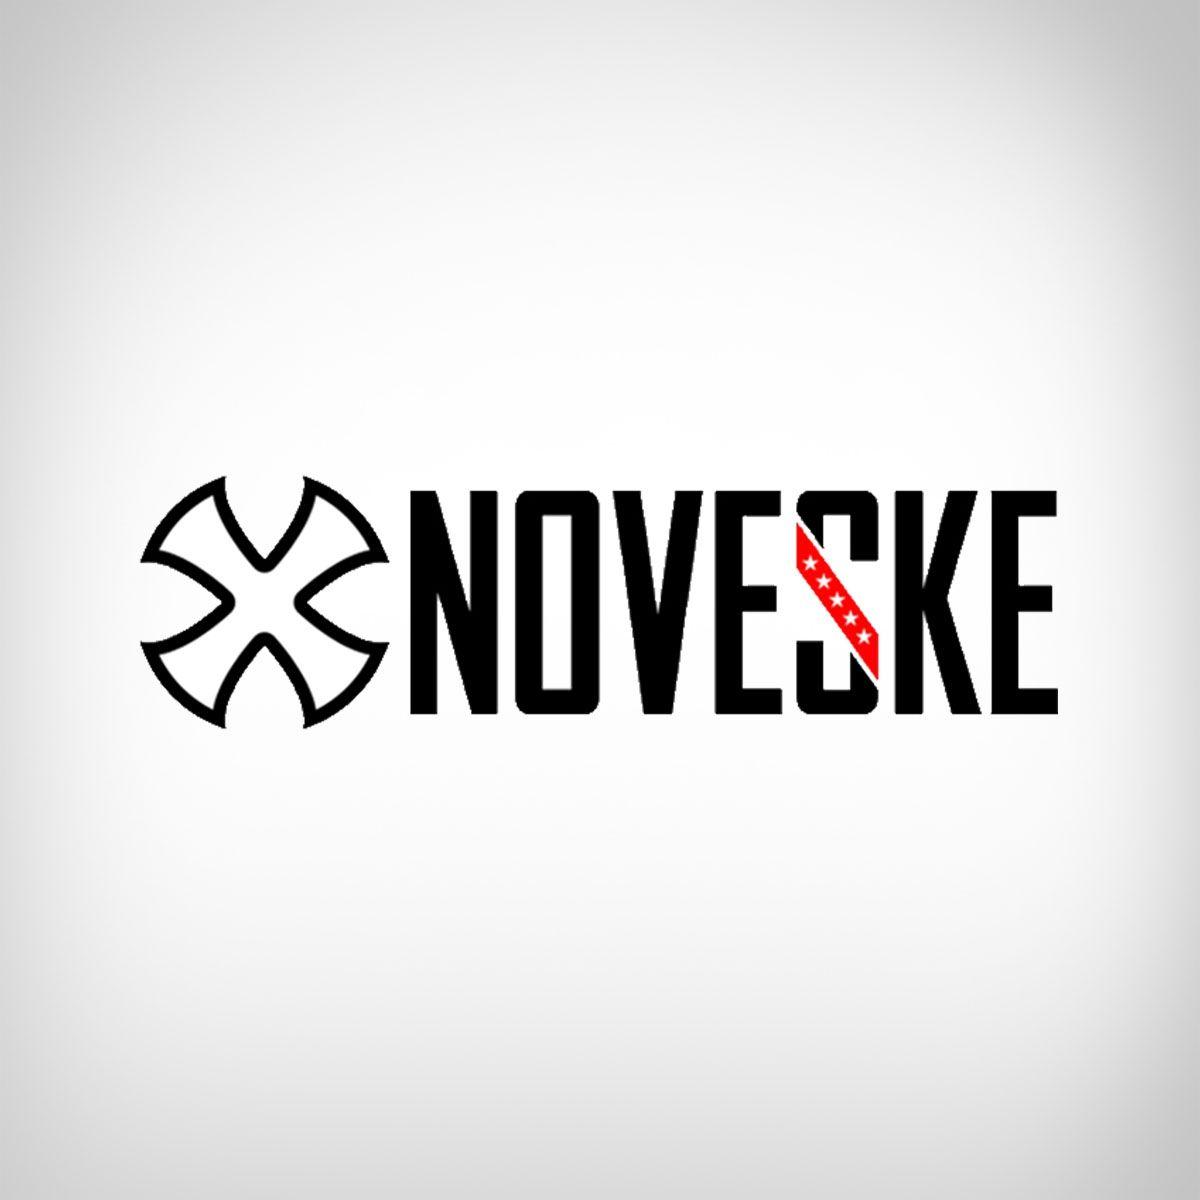 Noveske Logo - Manufacturer: Noveske | AR-15 parts, rifles from Noveske